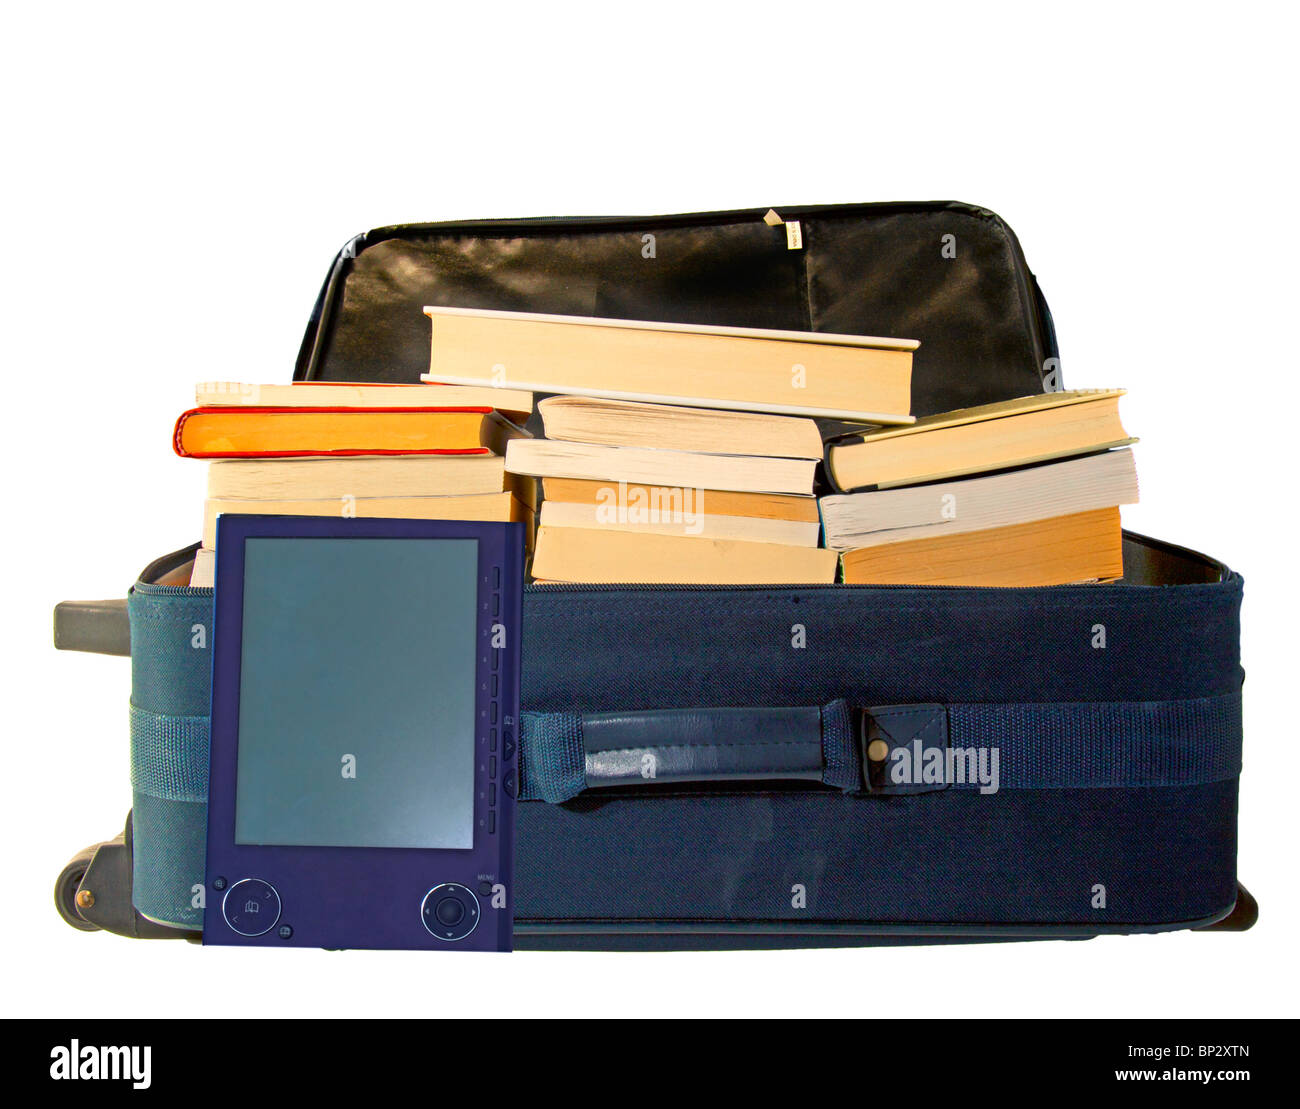 Una maleta azul para viajes completamente lleno de libros junto a un lector de ebooks (Sony PRS505) Foto de stock